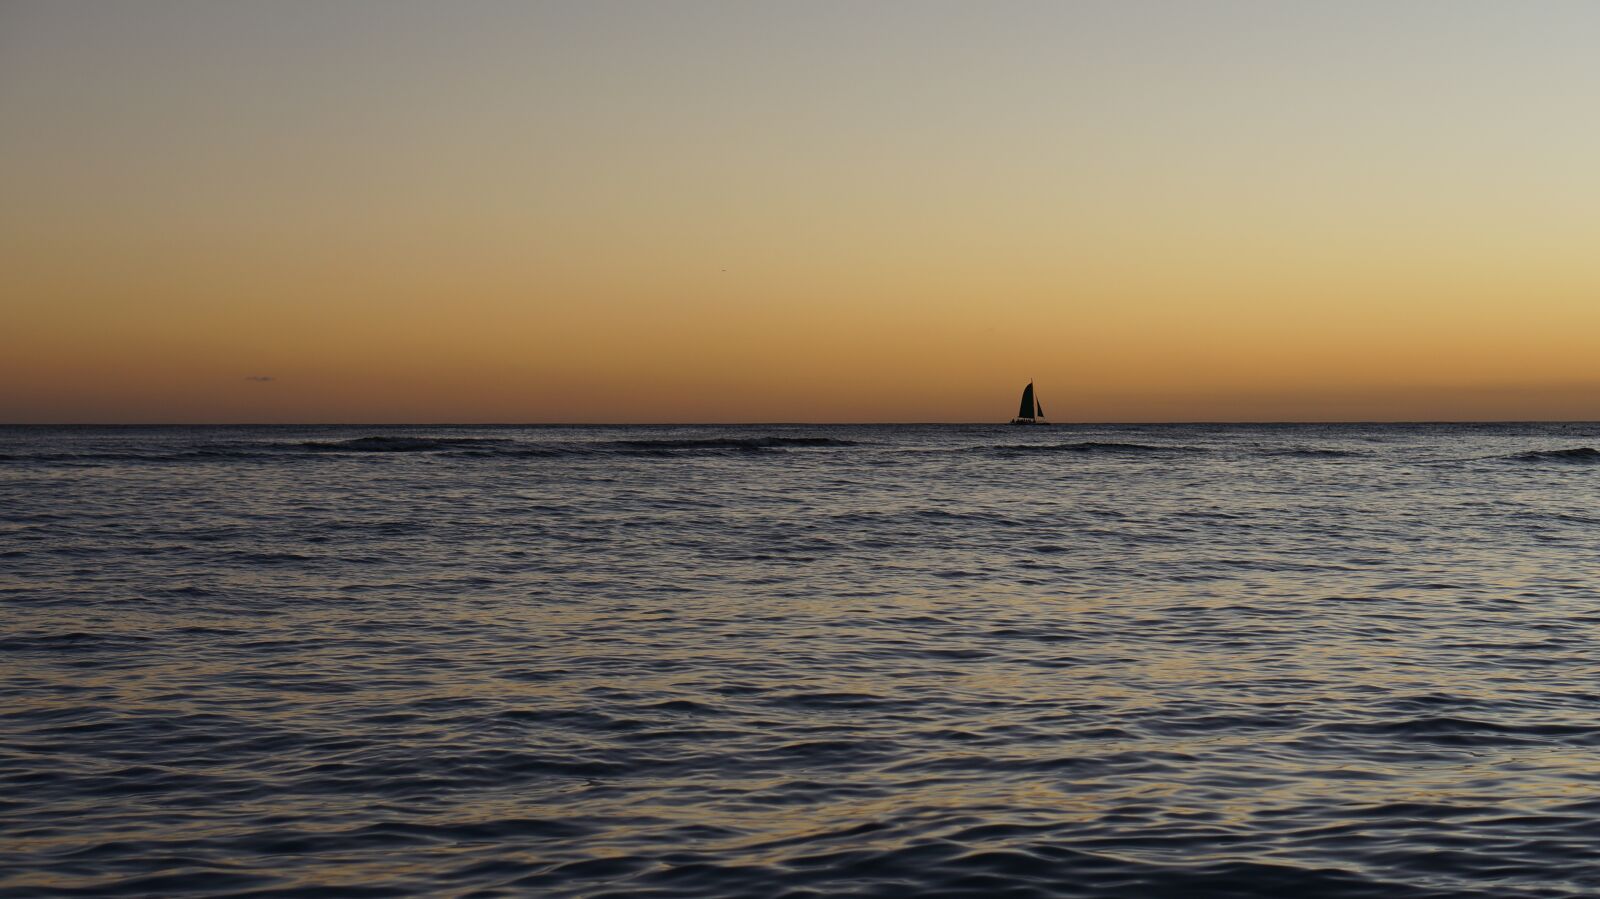 Sony Alpha NEX-5N sample photo. Sunset, beach, ocean photography